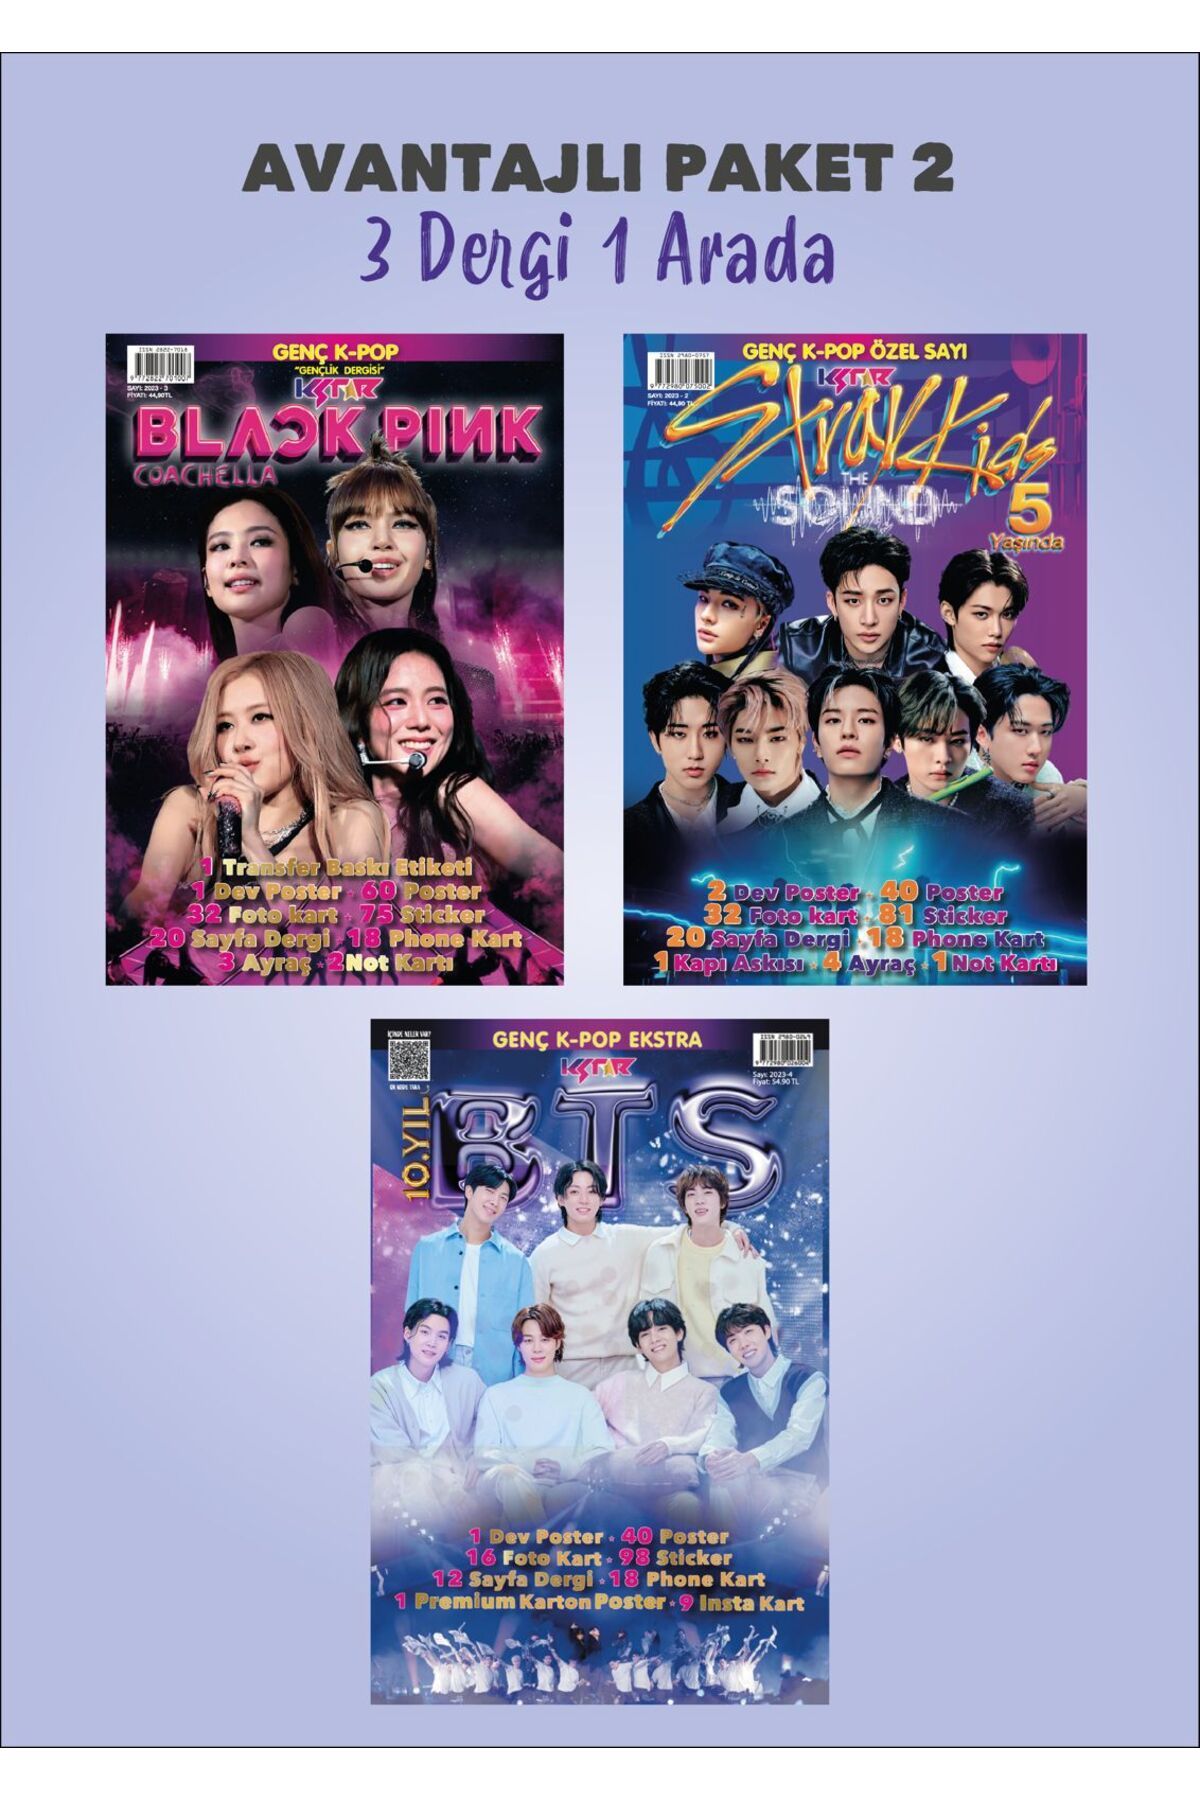 KSTAR Avantajlı Paket 2 / Blackpink - Stray Kids - Bts Dergisi Kpop